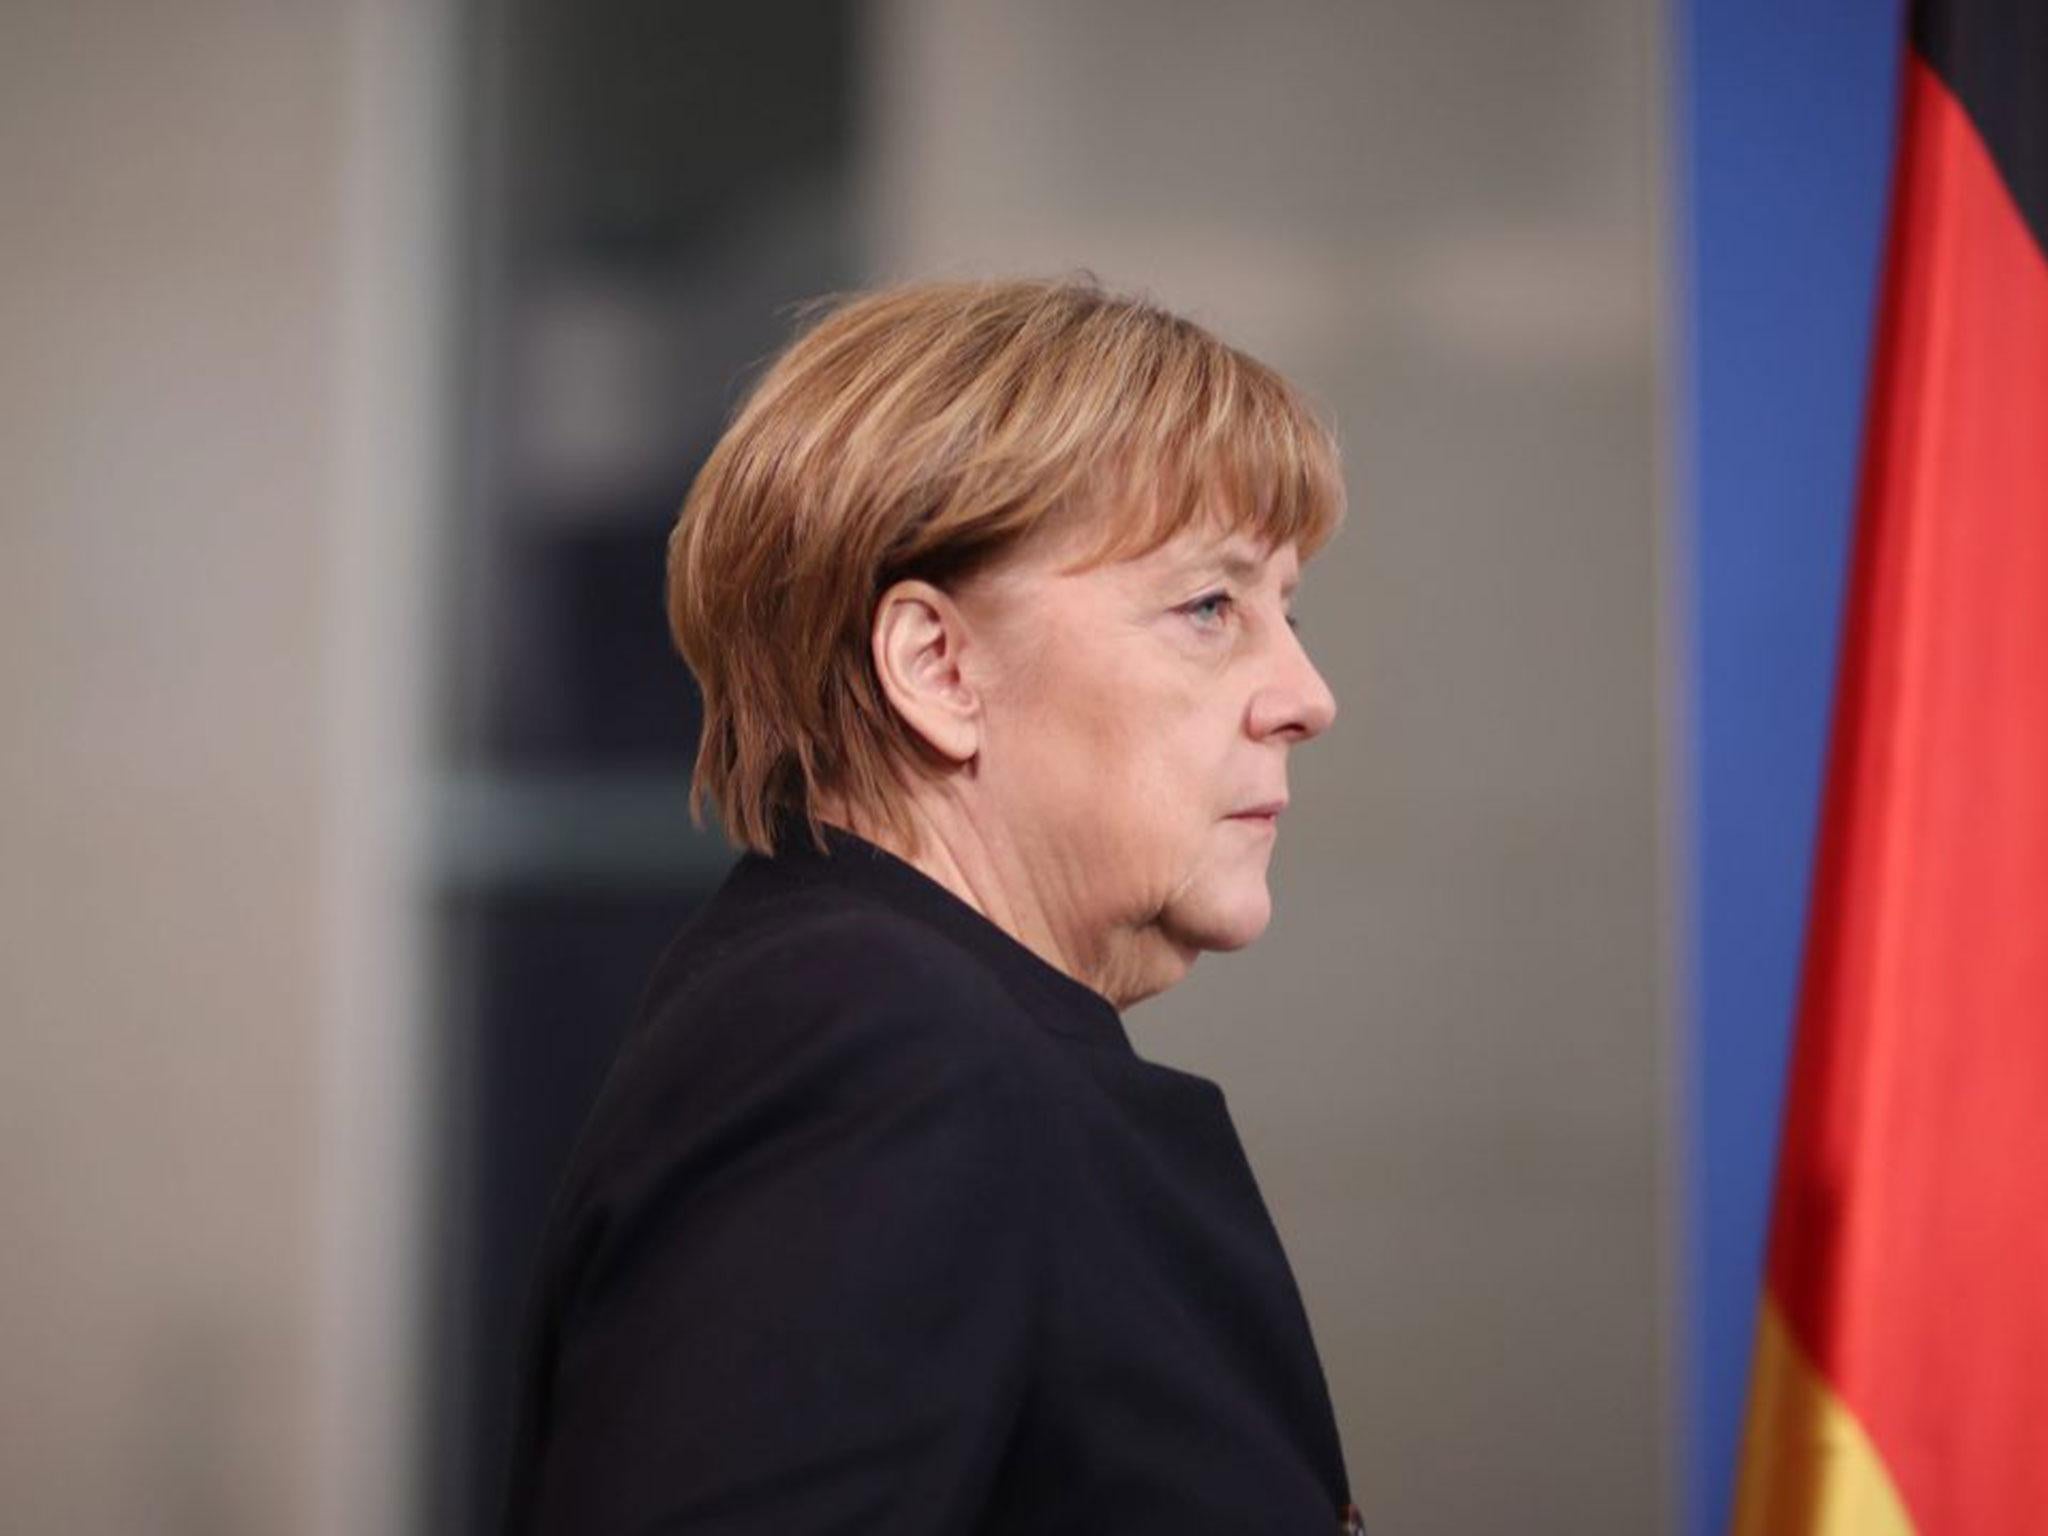 Angela Merkel criticised Mr Trump’s orders